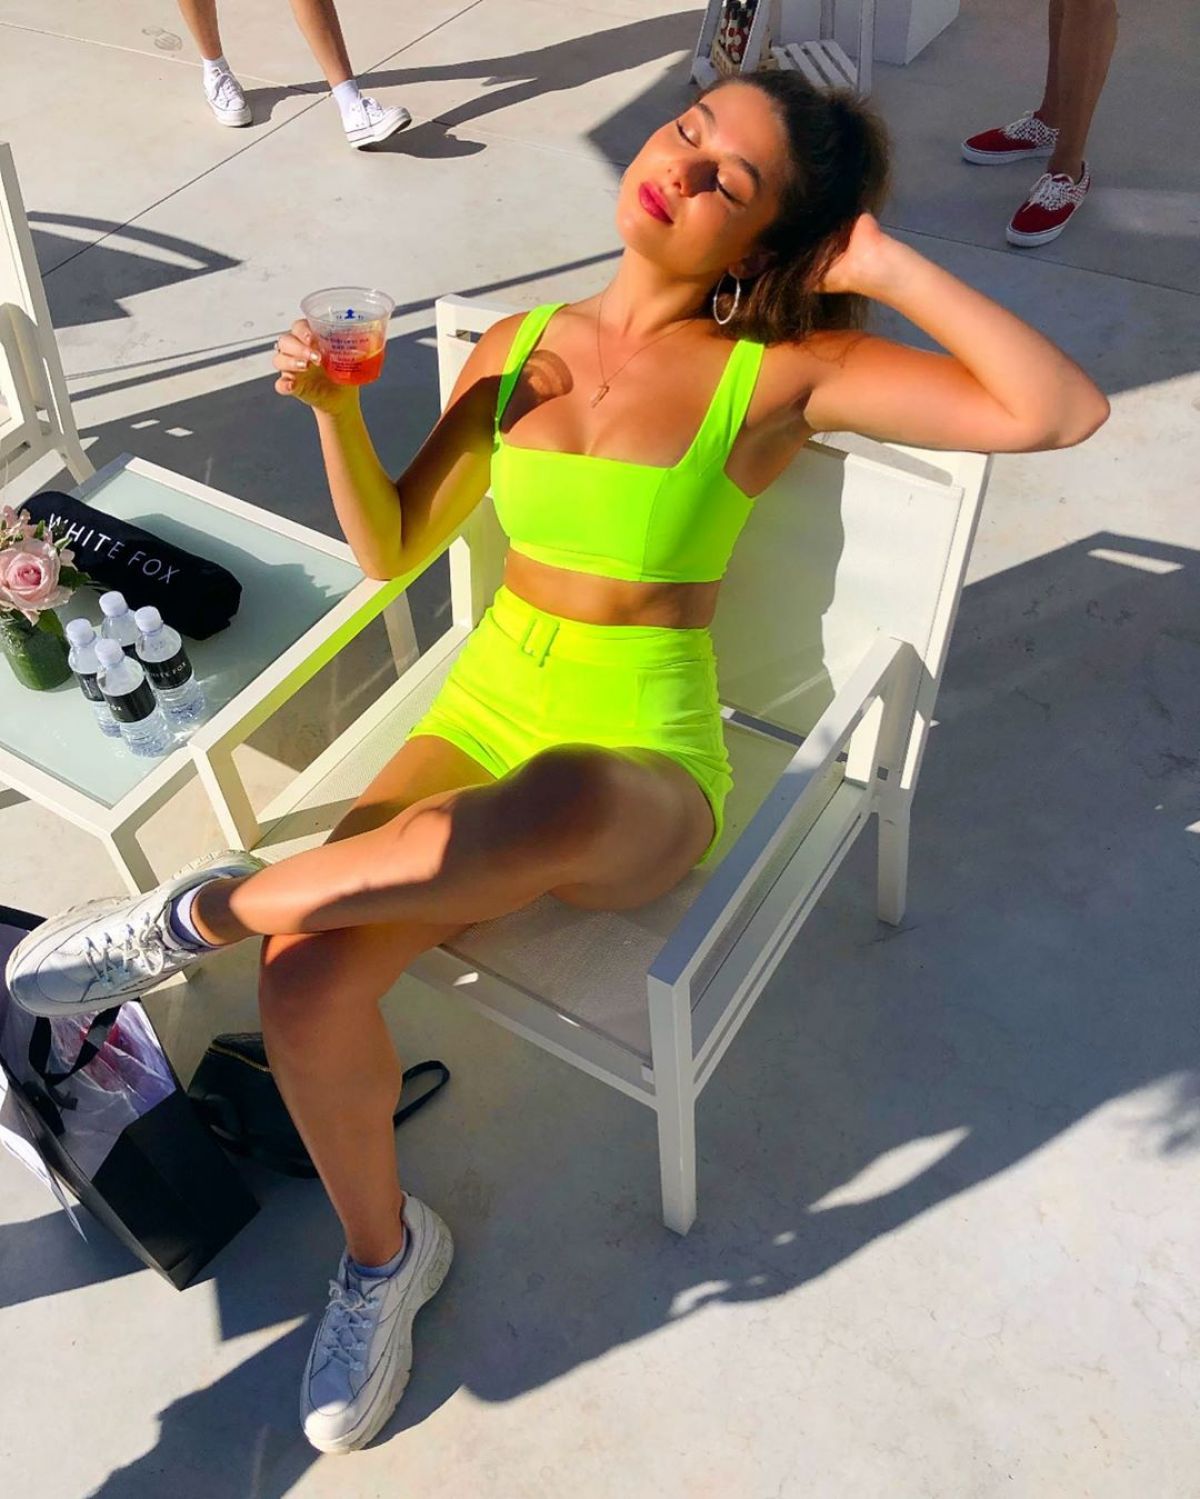 KIRA KOSARIN in Bikini - Instagram Picture June 2019.